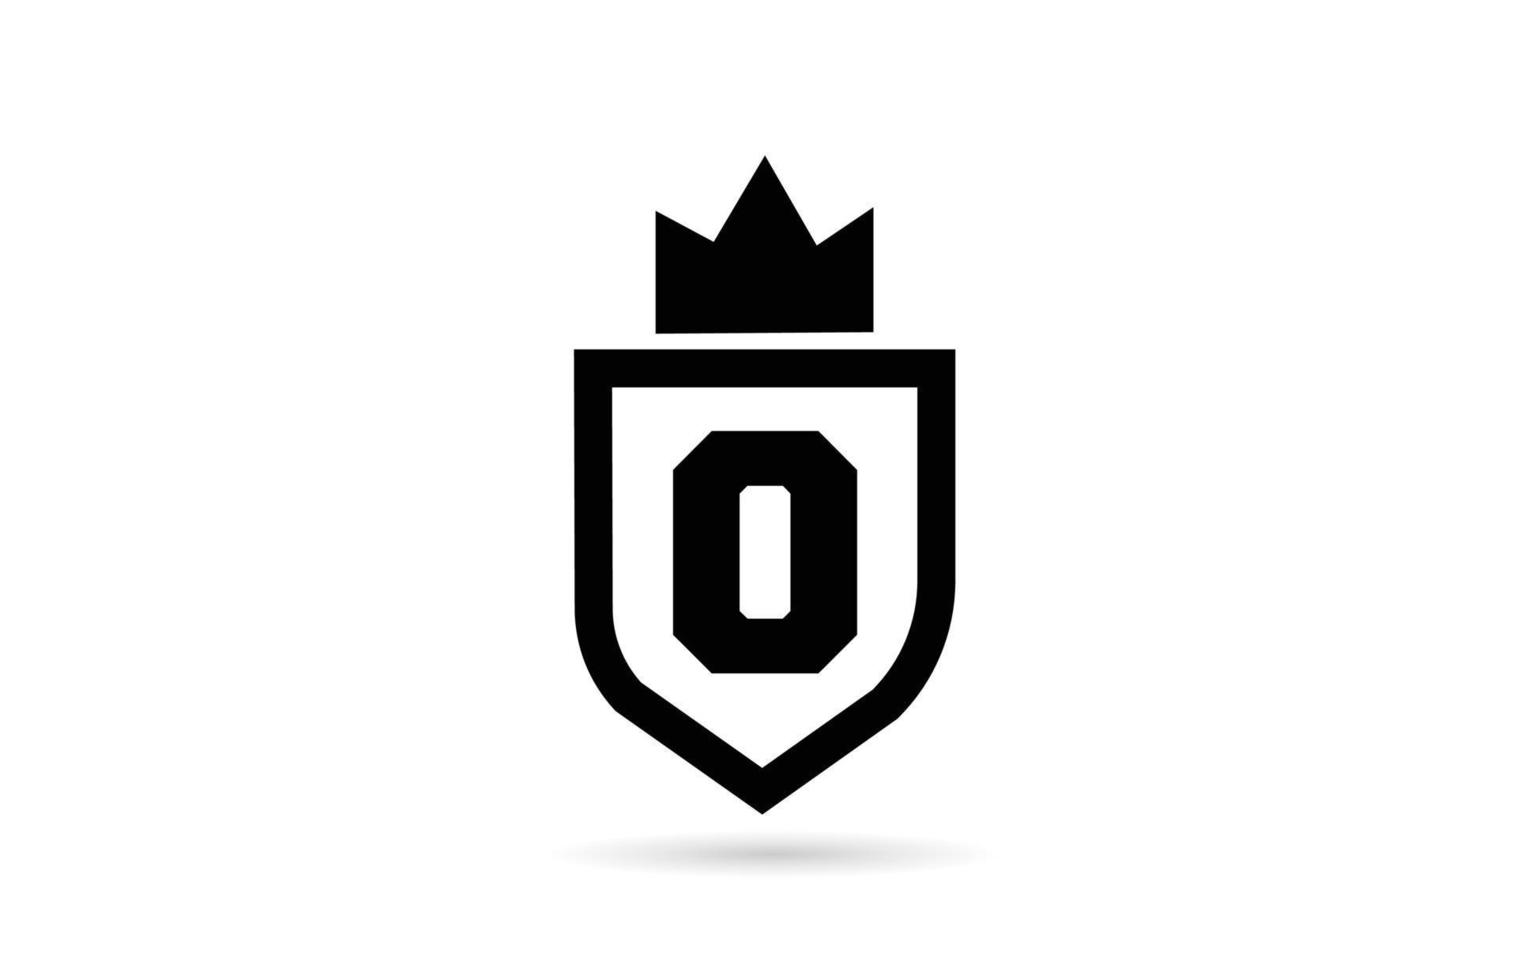 Schwarz-Weiß-O-Alphabet-Buchstaben-Symbol-Logo mit Schild- und Königskronen-Design. kreative Vorlage für Unternehmen und Unternehmen vektor